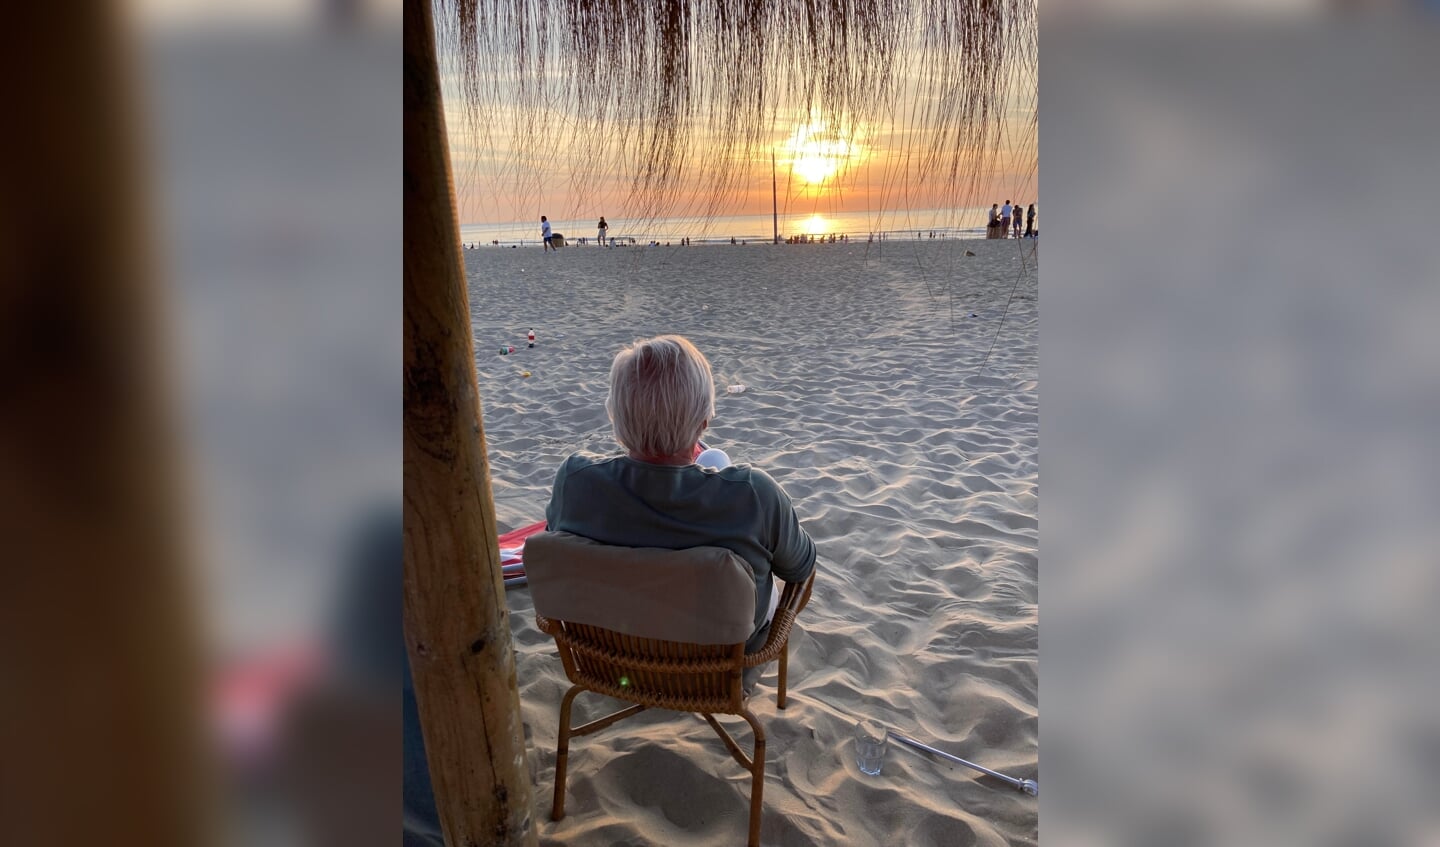 ,,Afgelopen maandag na een snikhete dag plofte ik ‘s avonds in een stoel op het bijna verlaten strand van Scheveningen. De zonsondergang is een perfecte afsluiting van een prachtige dag.